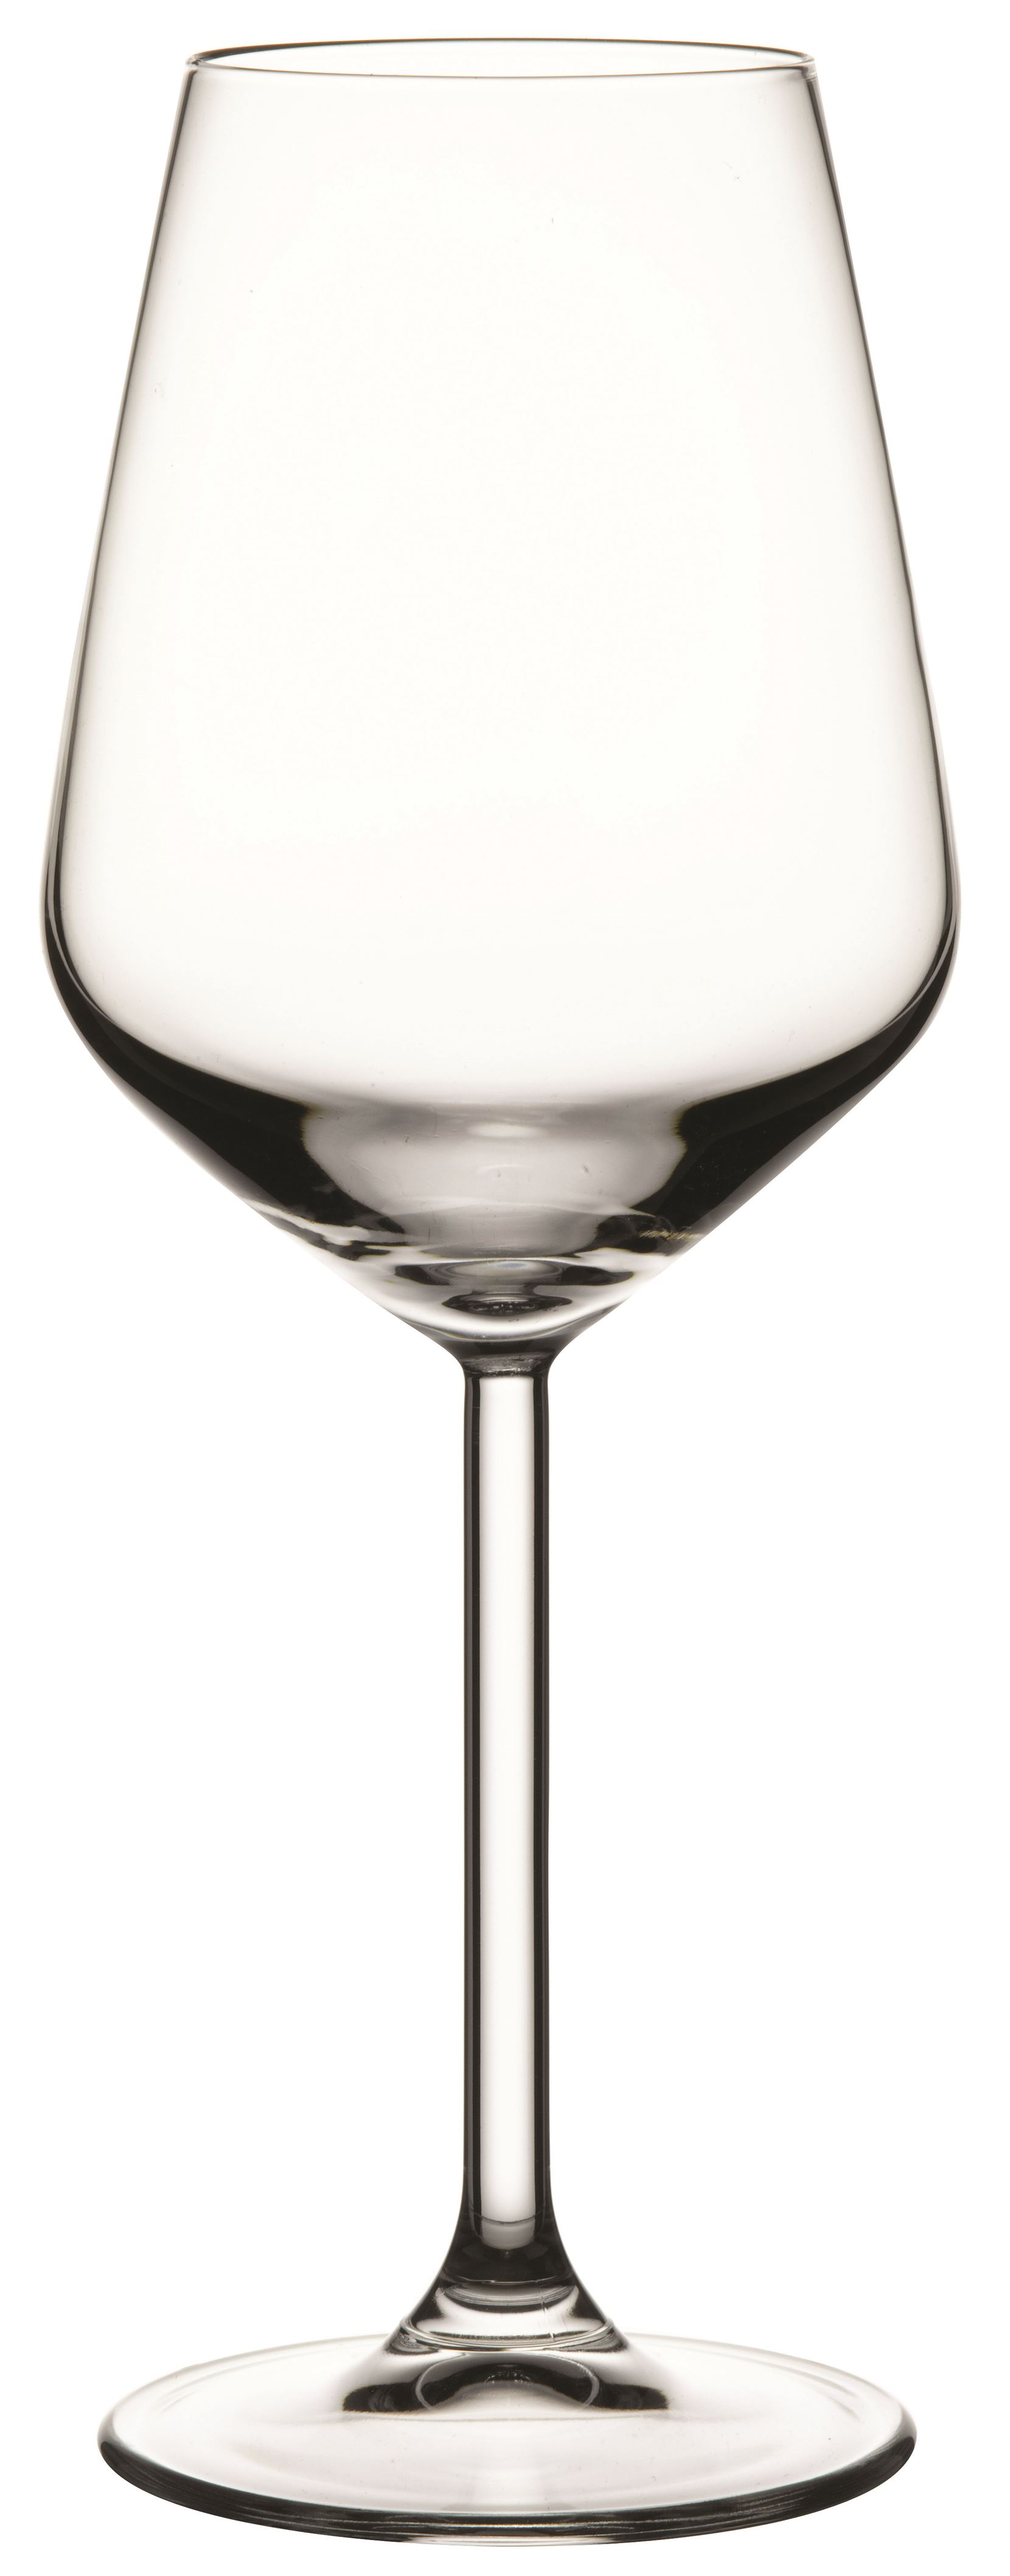 Weinglas Inhalt 0,350 Liter, Serie Allegra, aus Glas